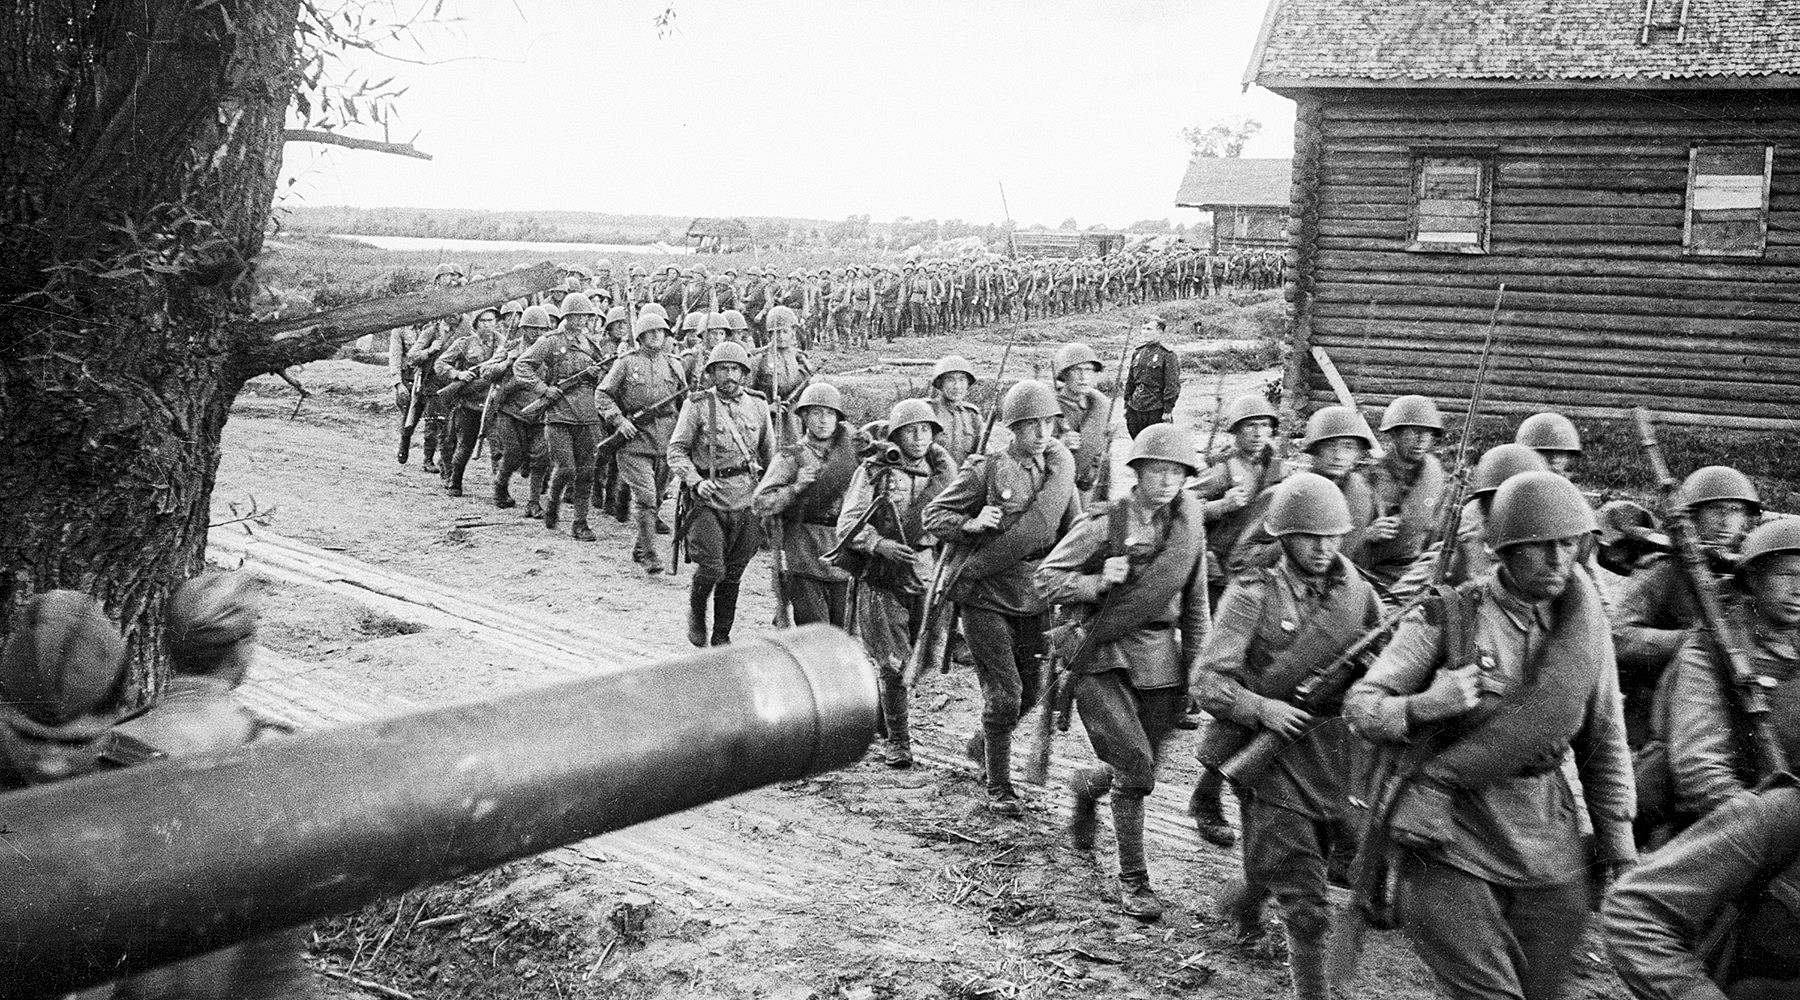 Пётр Бернштейн. Подразделение красноармейцев проходит маршем через деревню в Польше. 1944